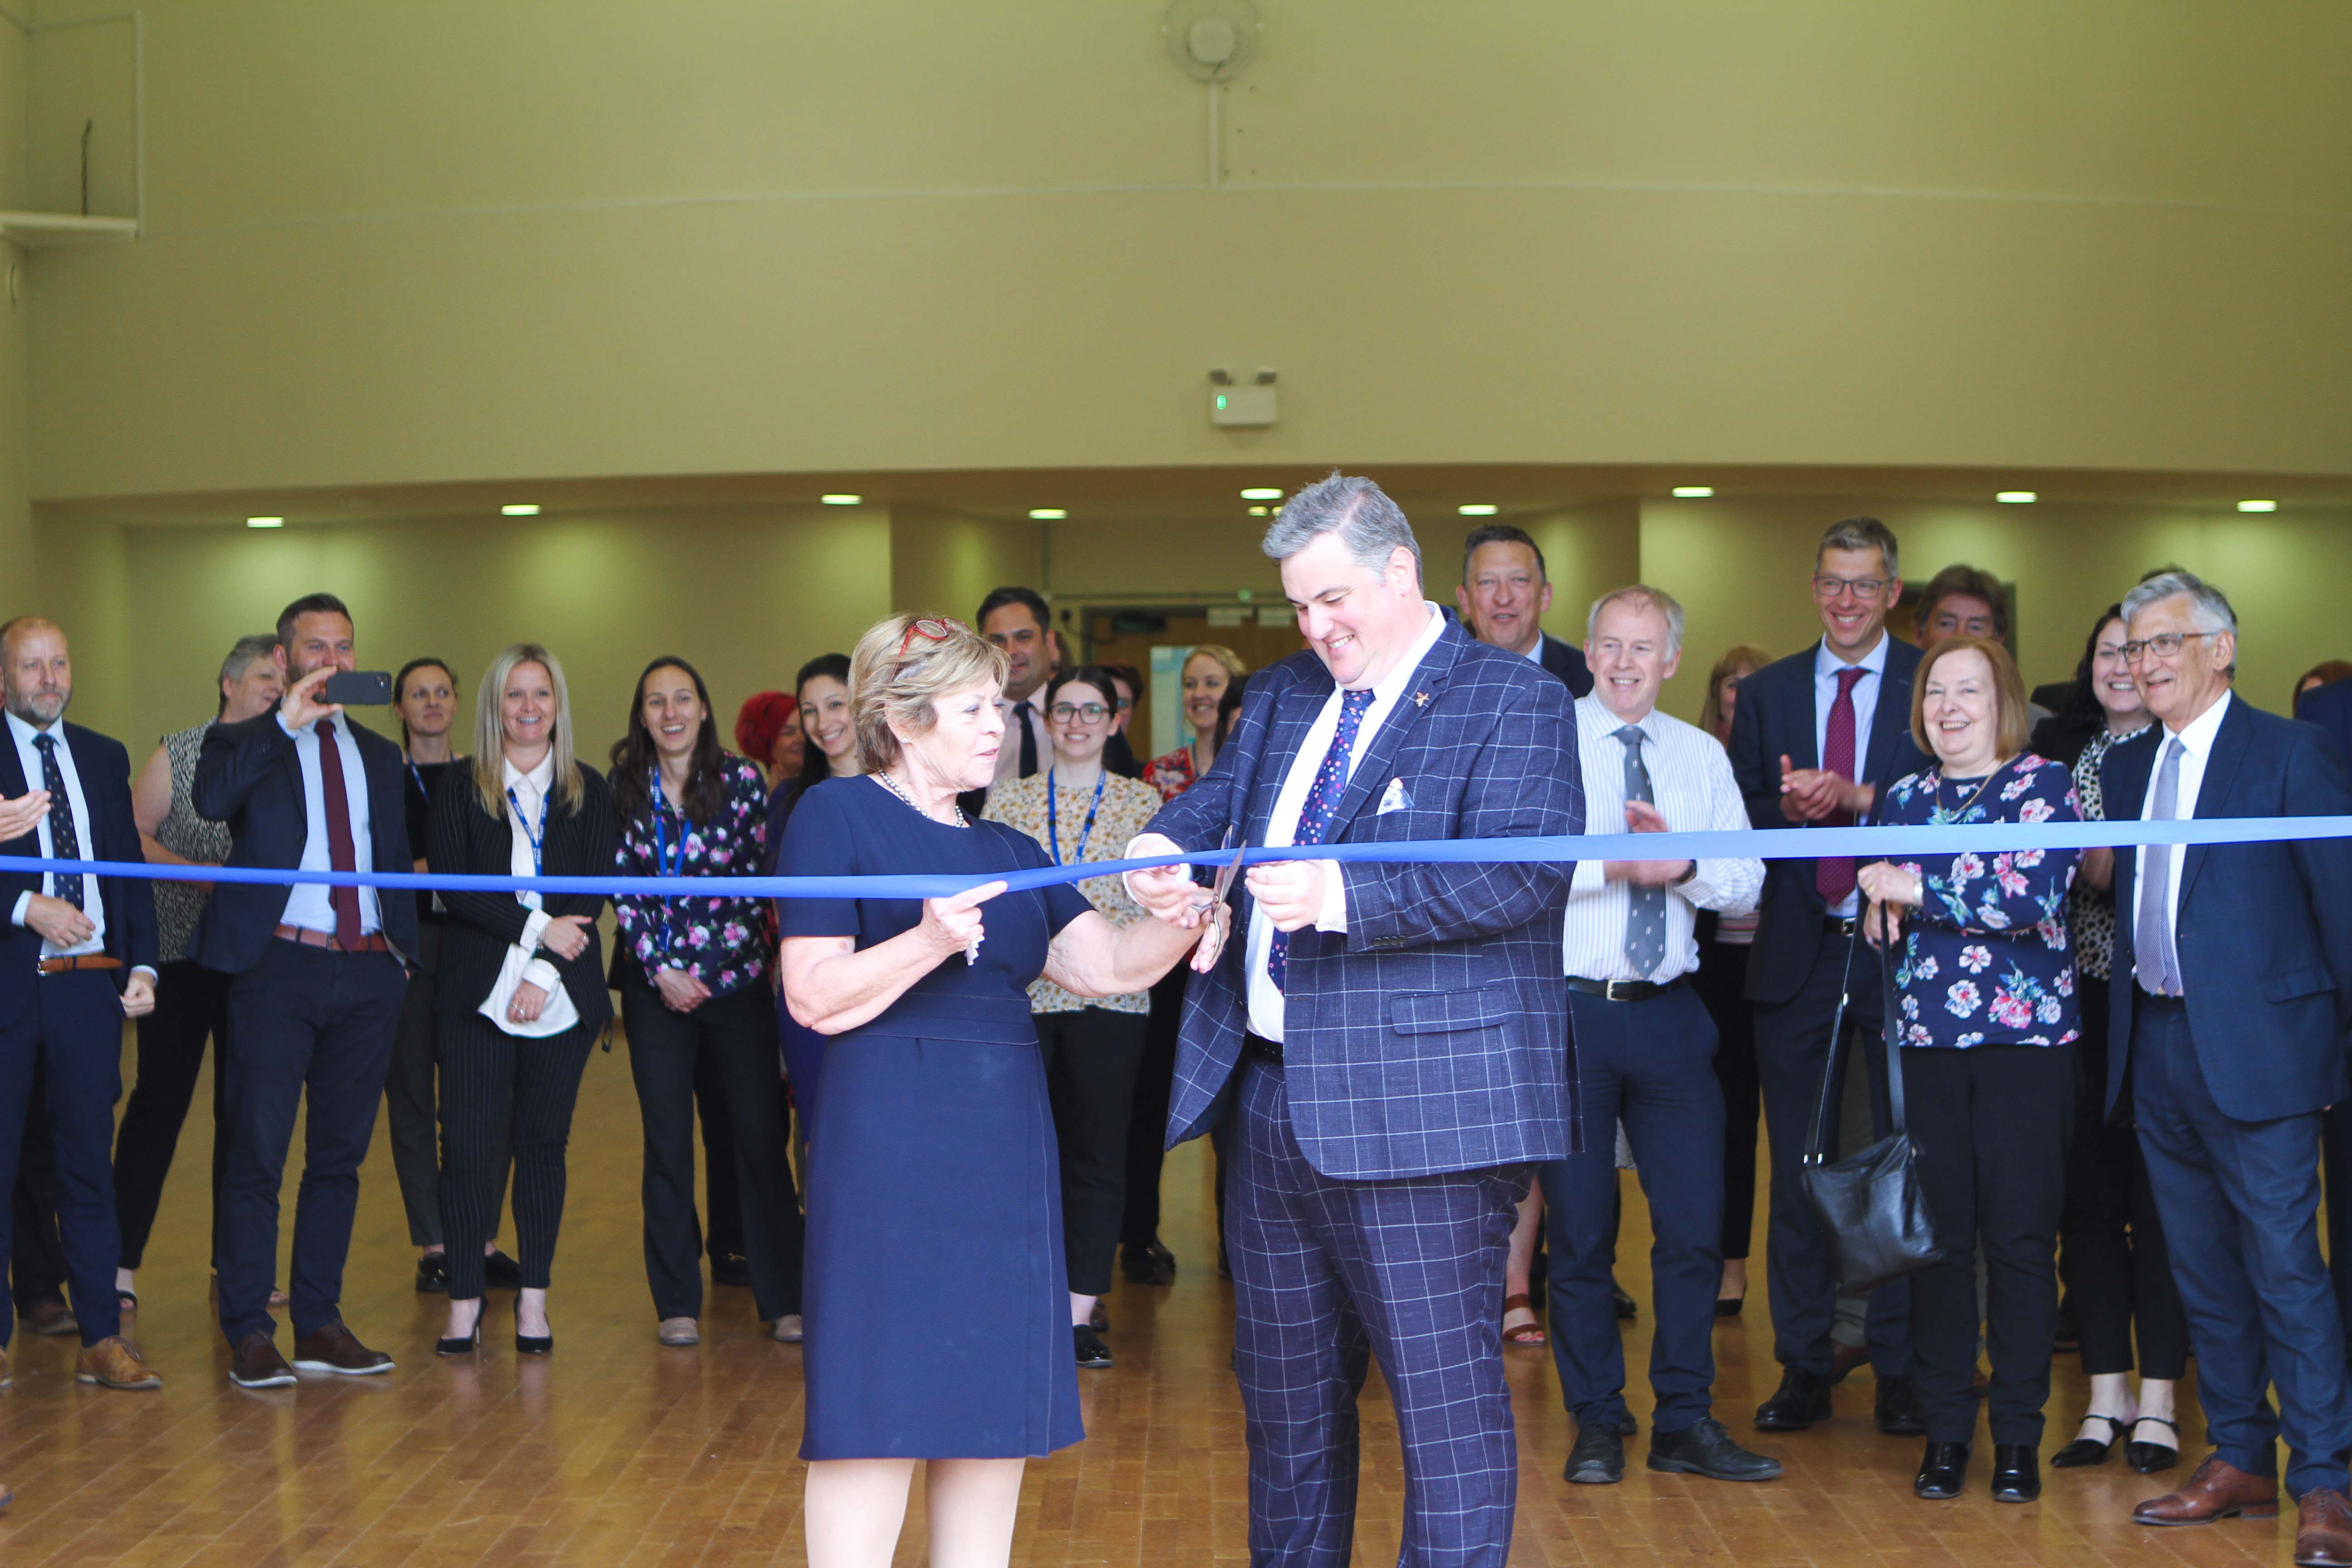 New SEND school opens in Warwickshire!